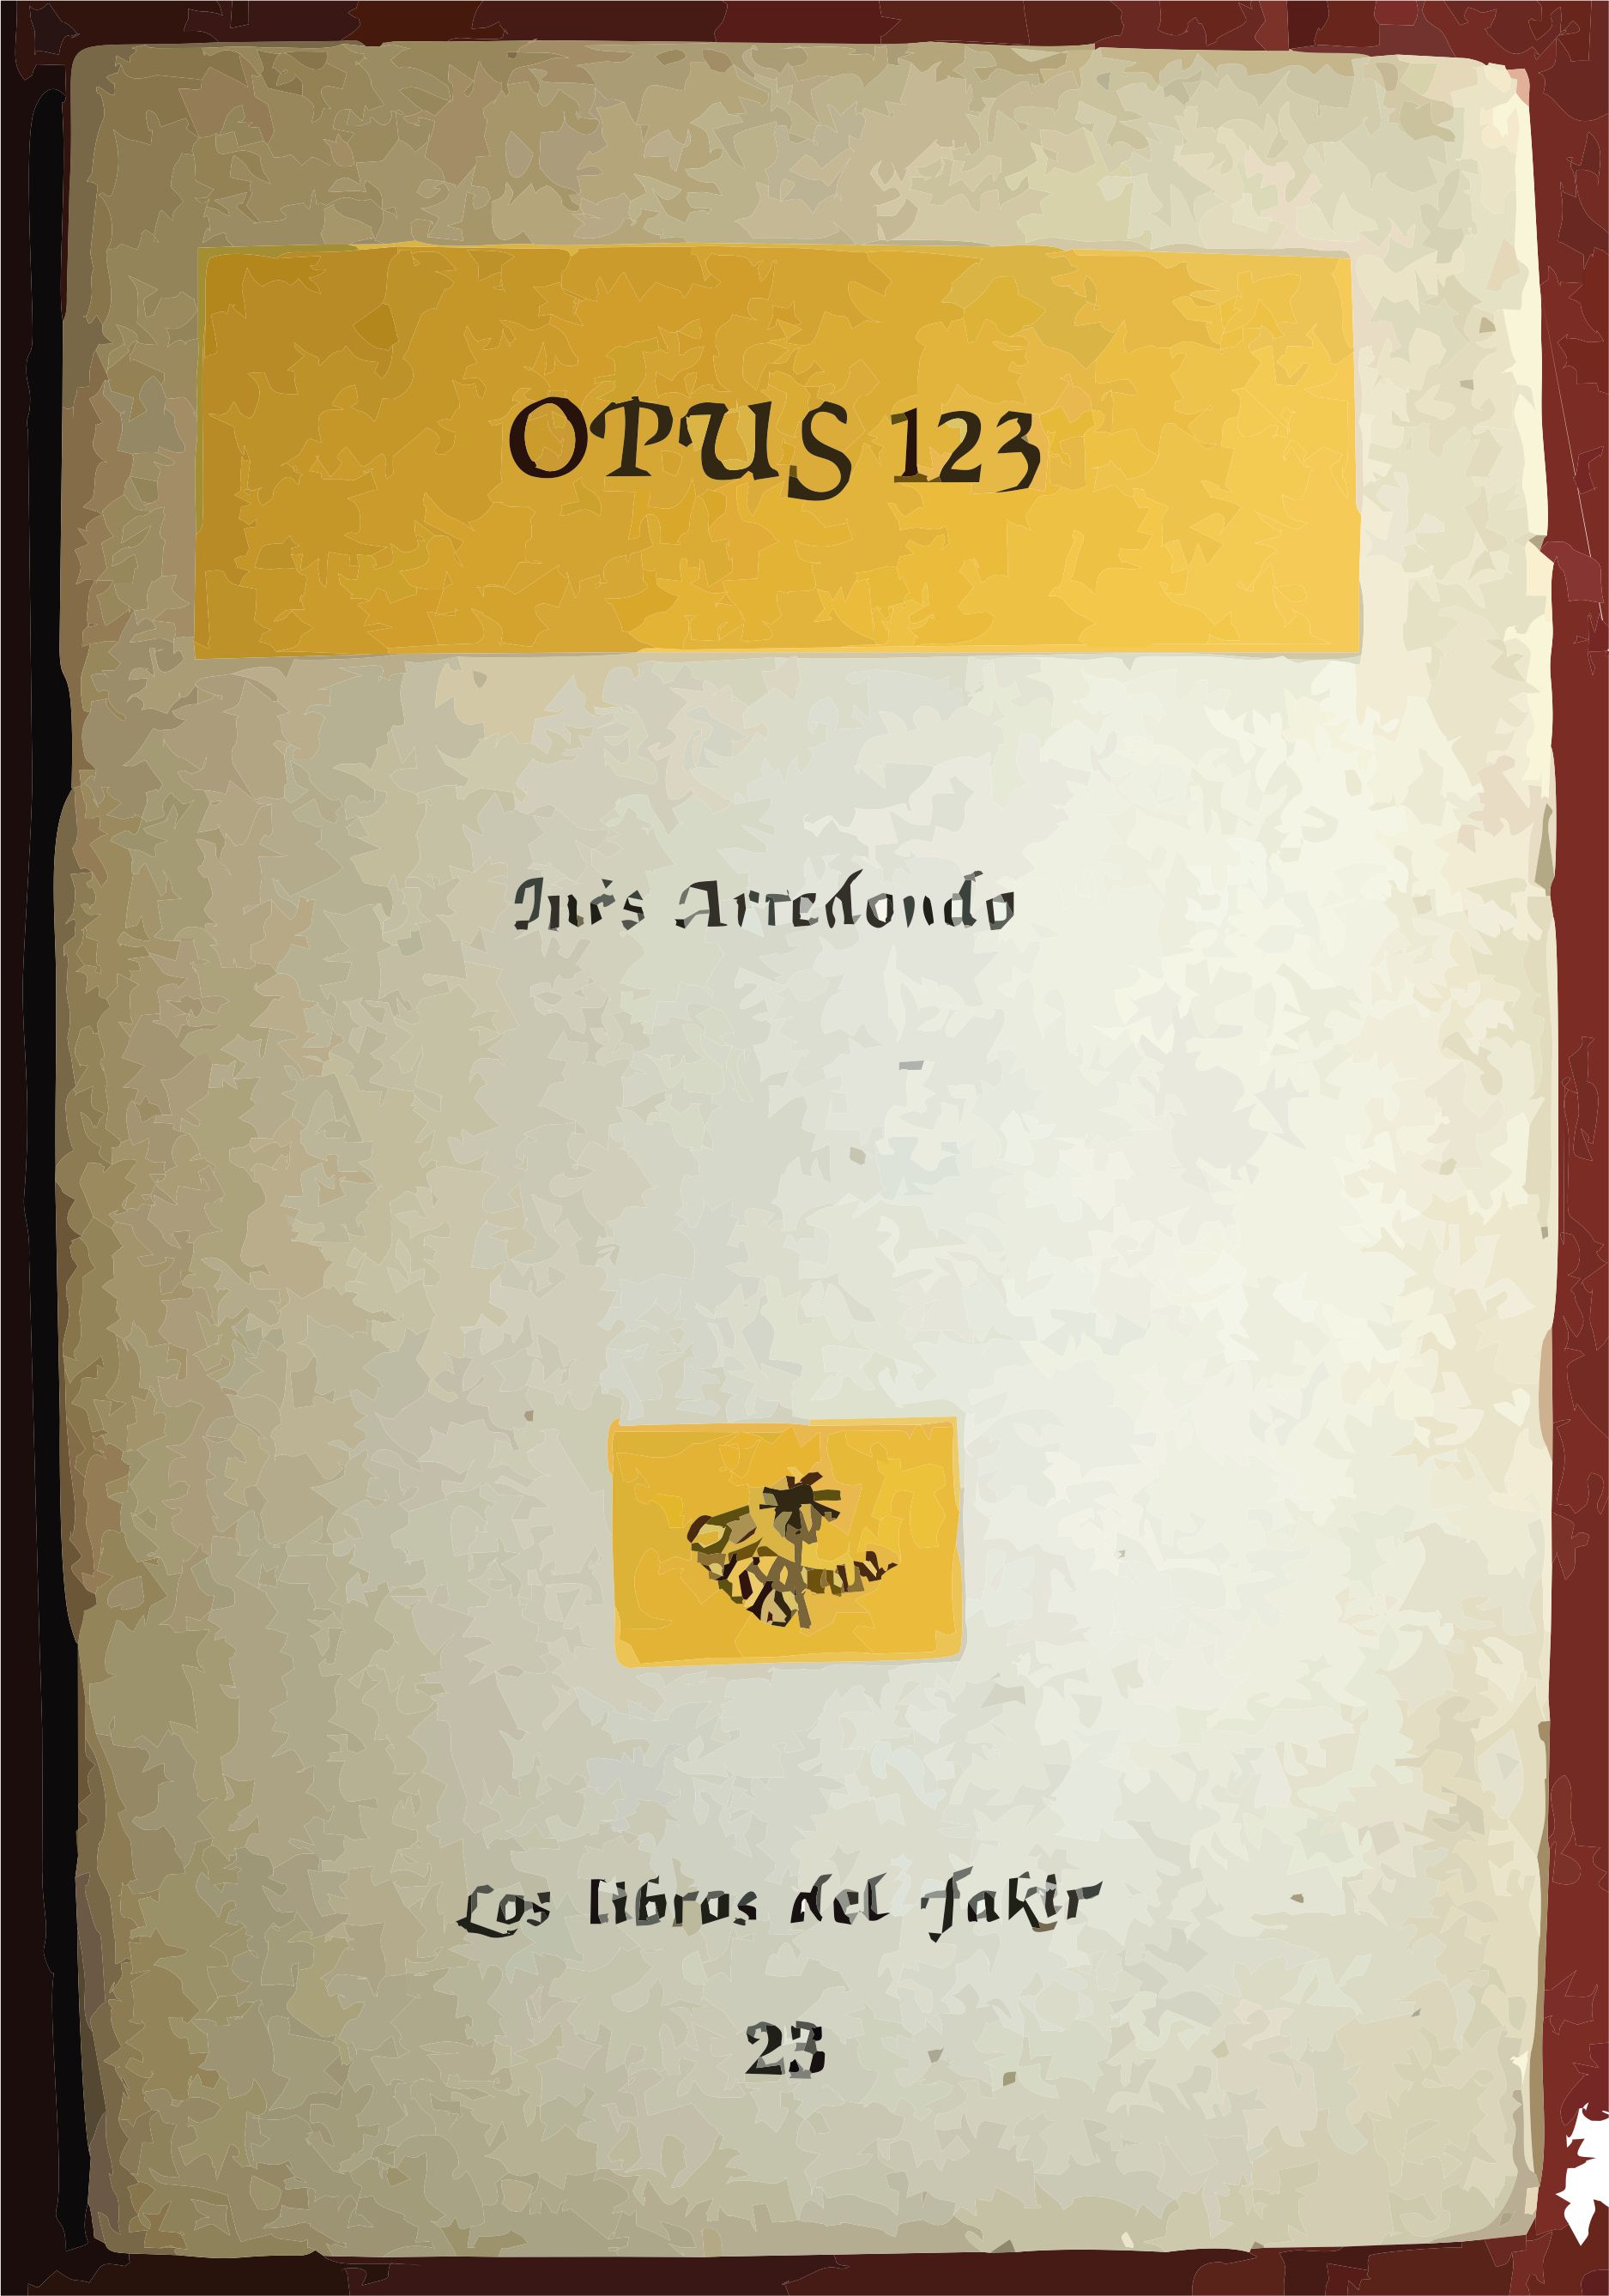 Opus 123